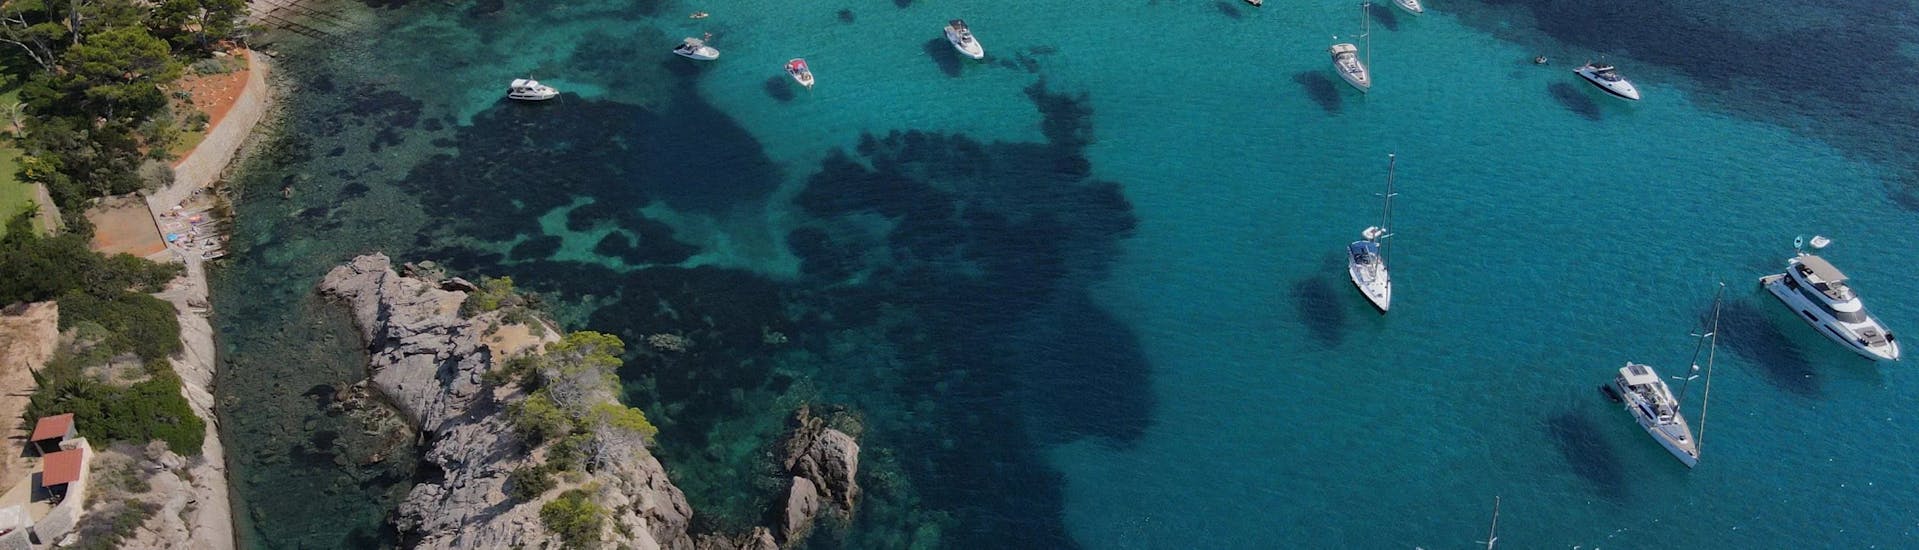 Location de bateau à Santa Eulària, Ibiza (jusqu'à 8 pers.).